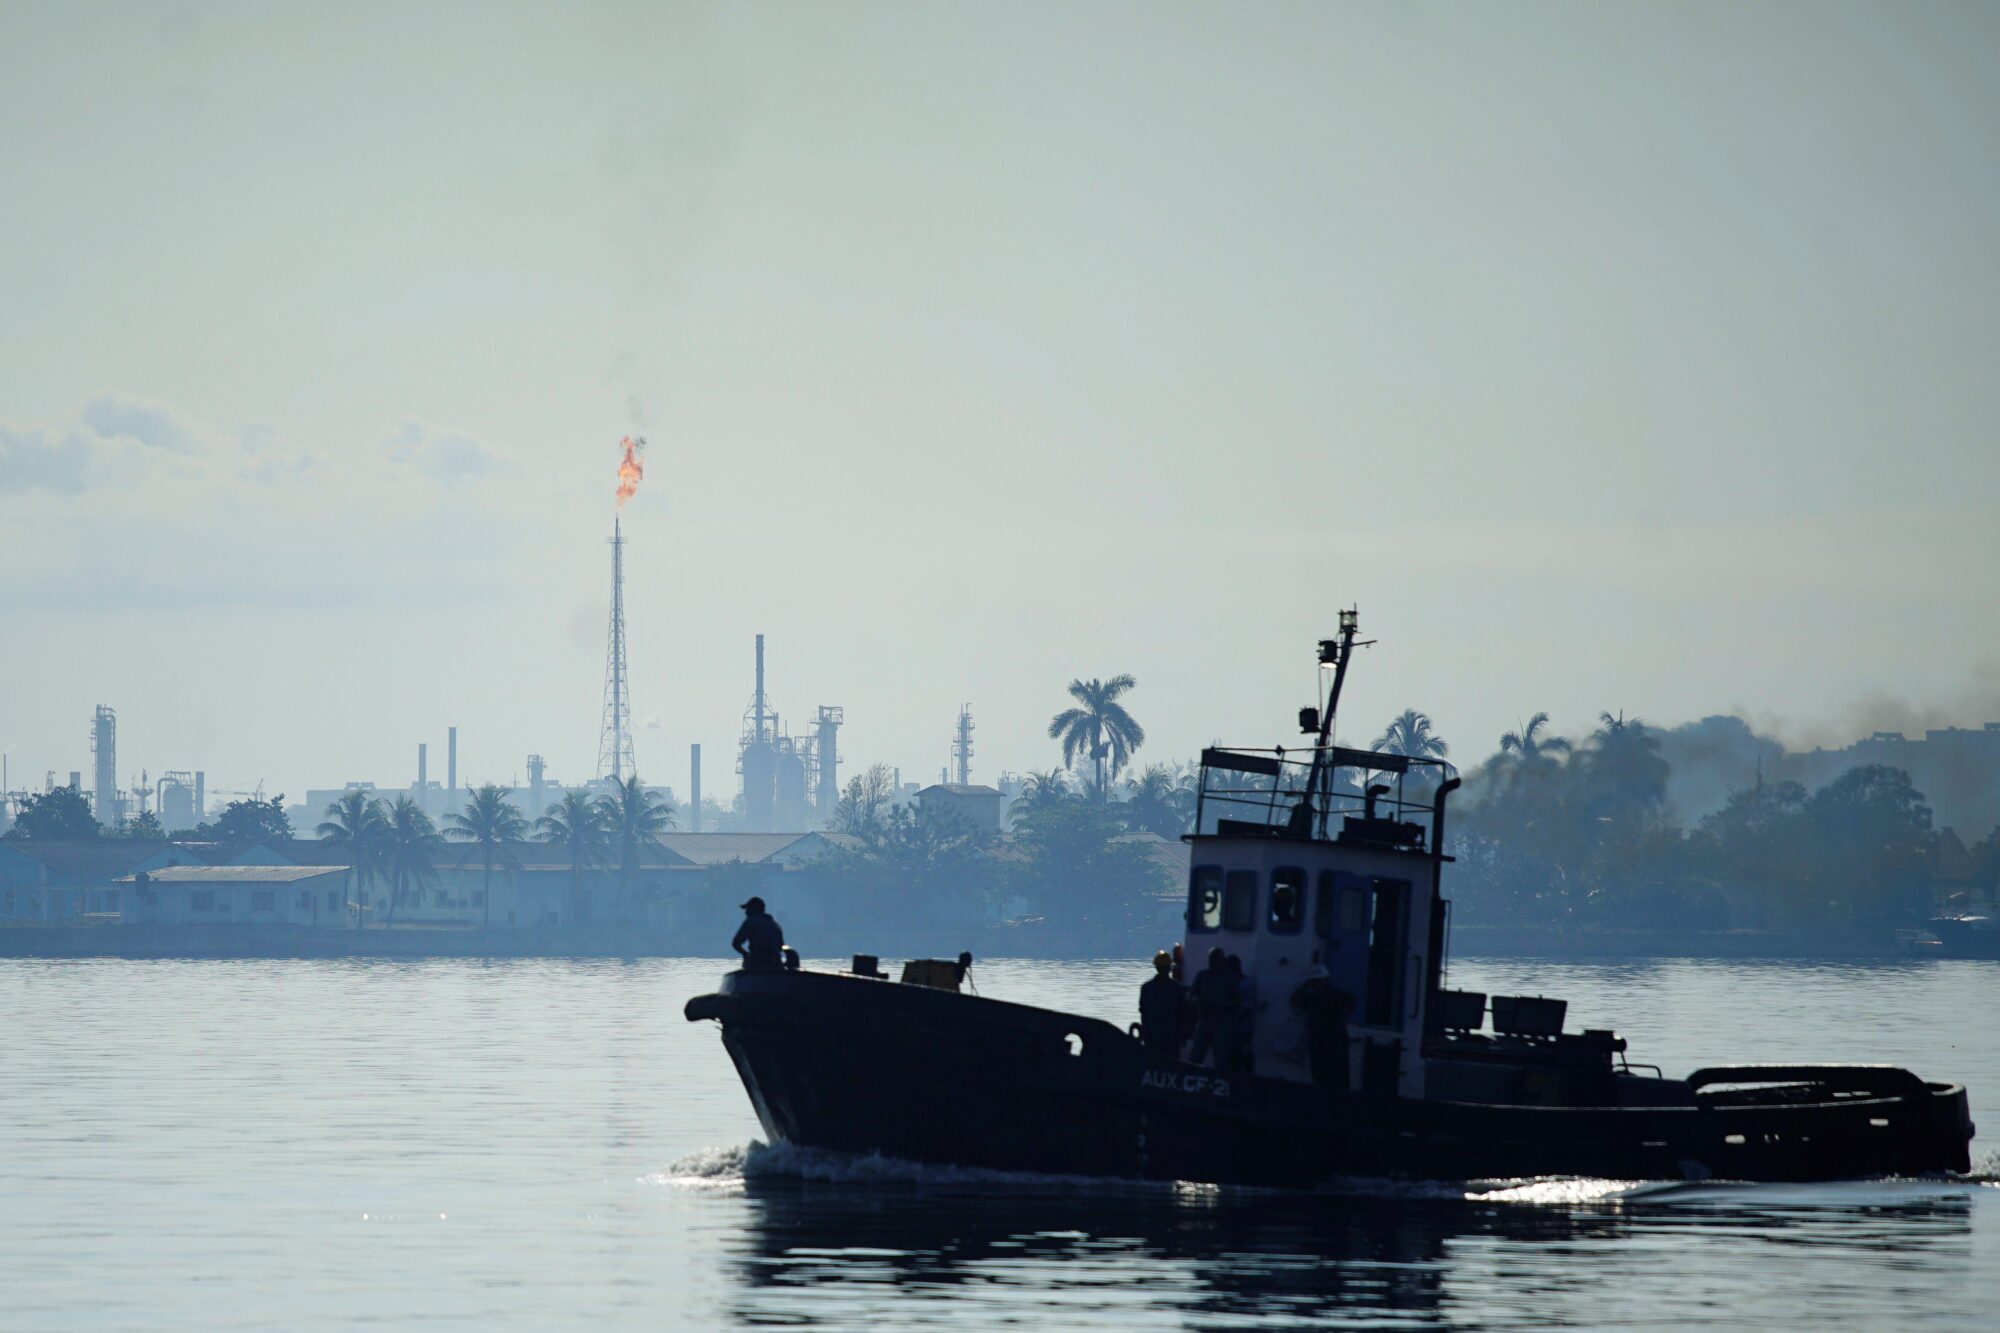 <p>Um barco passa pela refinaria de petróleo Nico López, na baía de Havana, Cuba. Cerca de 95% da eletricidade da ilha deriva de combustíveis fósseis. Há expectativas de que a adesão à Parceria Energética da Iniciativa Cinturão e Rota da China possa dar o pontapé inicial para aumentar a capacidade de energia renovável do país. (Imagem: Alexandre Meneghini / Alamy)</p>